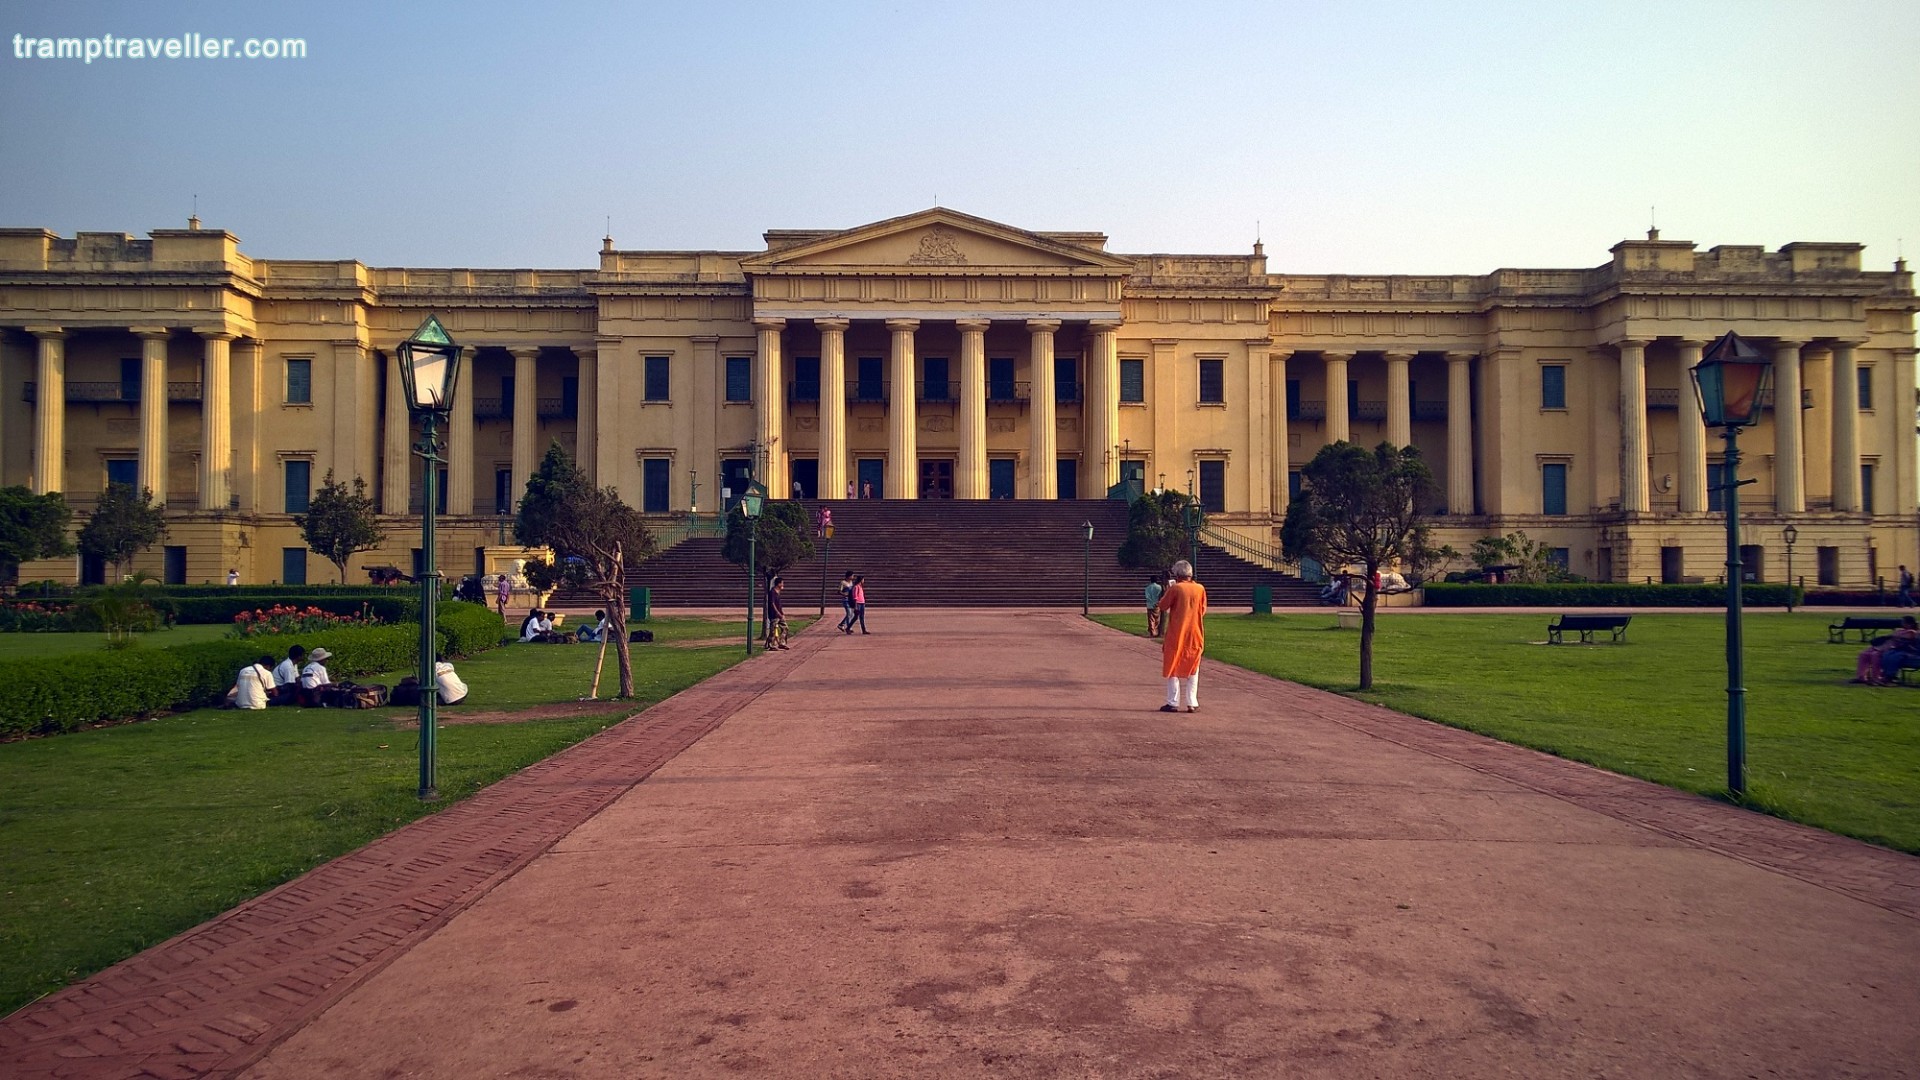 Hazarduari Palace and Museum